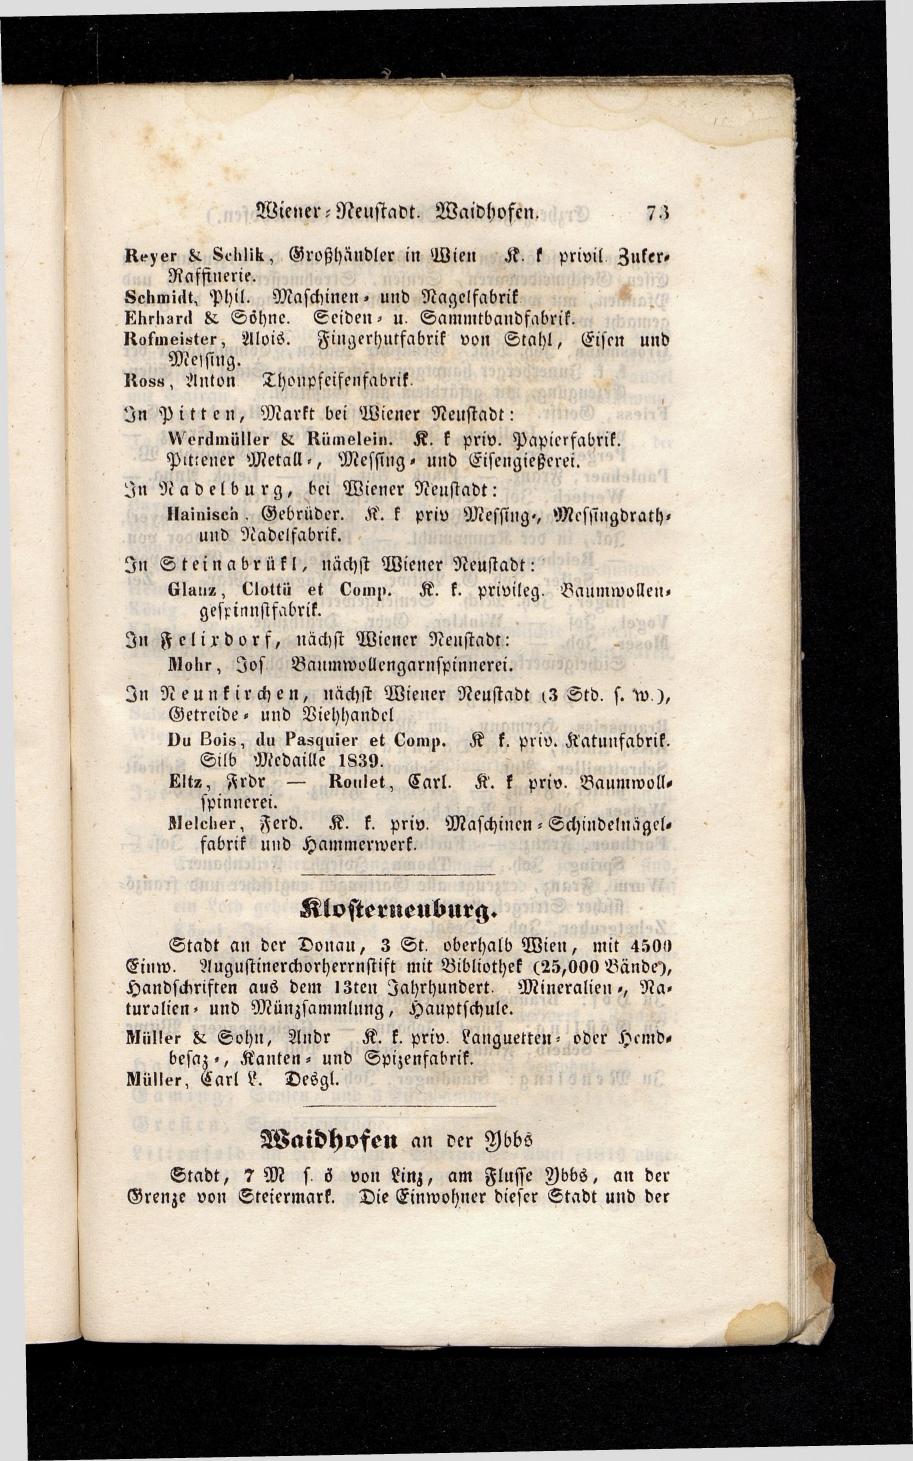 Grosses Adressbuch der Kaufleute. No. 13. Oesterreich ober u. unter der Enns 1844 - Seite 77